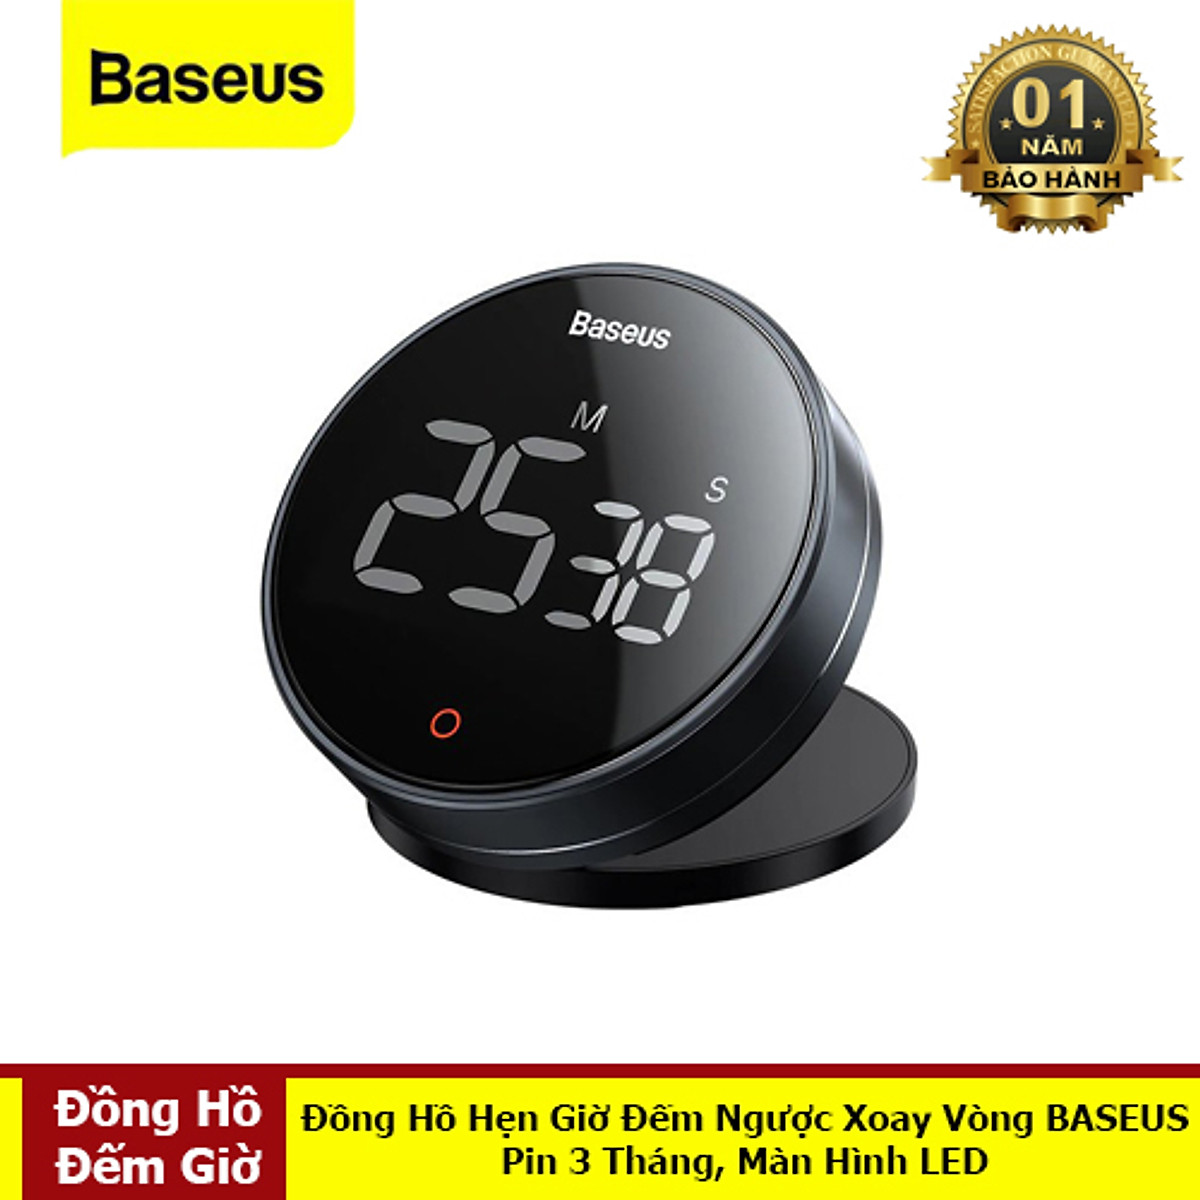 Đồng hồ báo thức thông minh Baseus Subai chính hãng giá rẻ